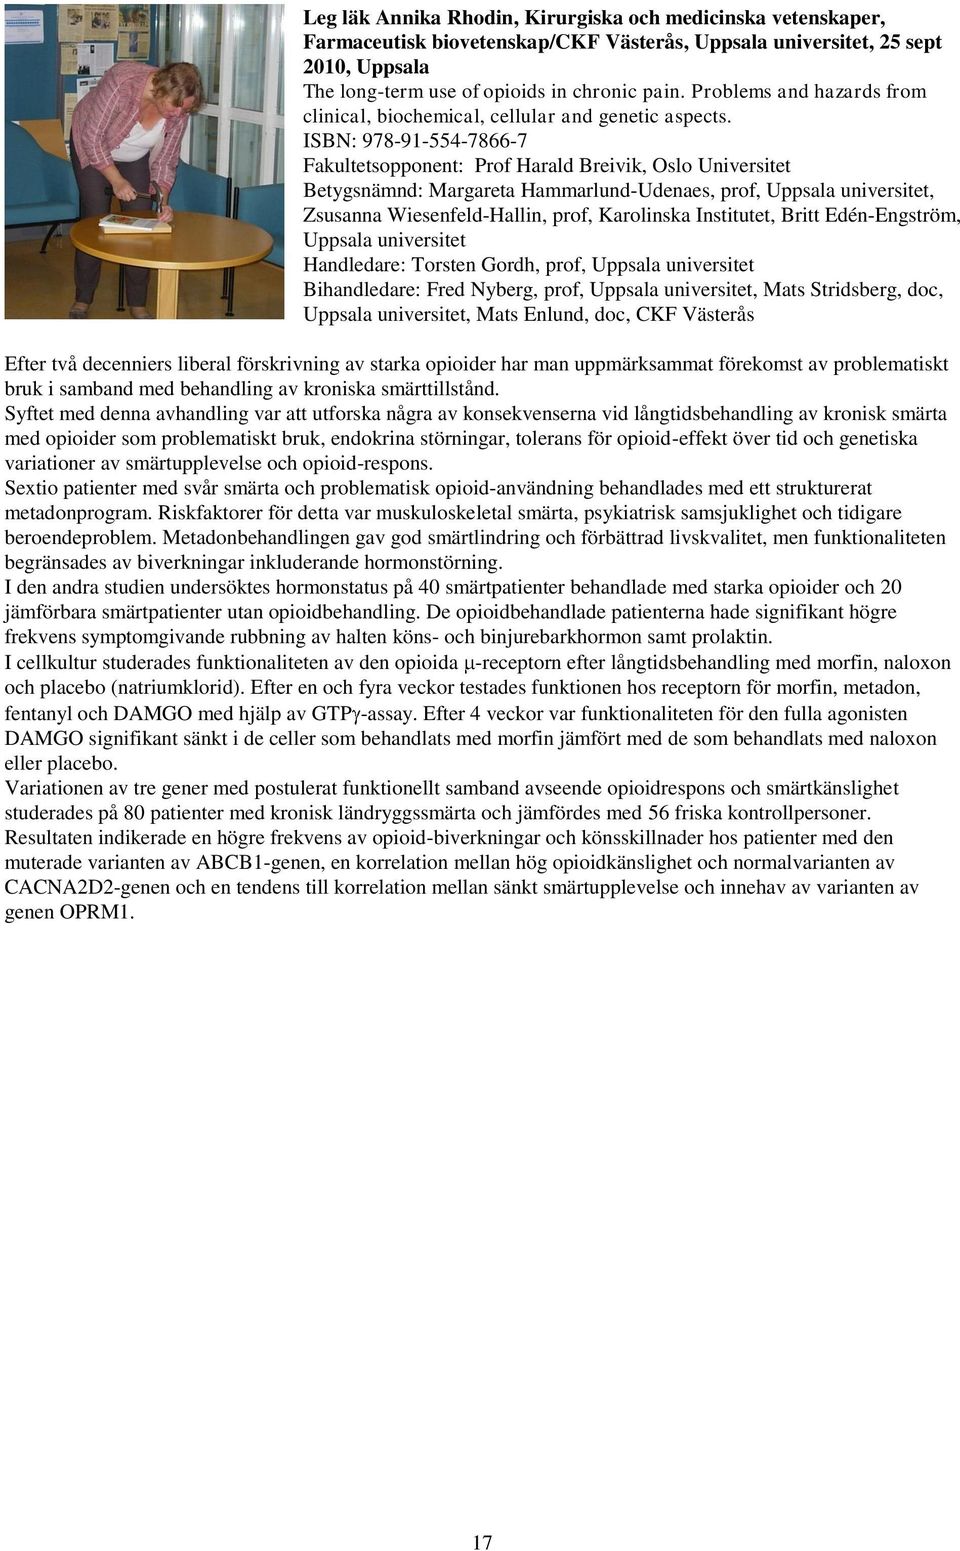 ISBN: 978-91-554-7866-7 Fakultetsopponent: Prof Harald Breivik, Oslo Universitet Betygsnämnd: Margareta Hammarlund-Udenaes, prof, Uppsala universitet, Zsusanna Wiesenfeld-Hallin, prof, Karolinska